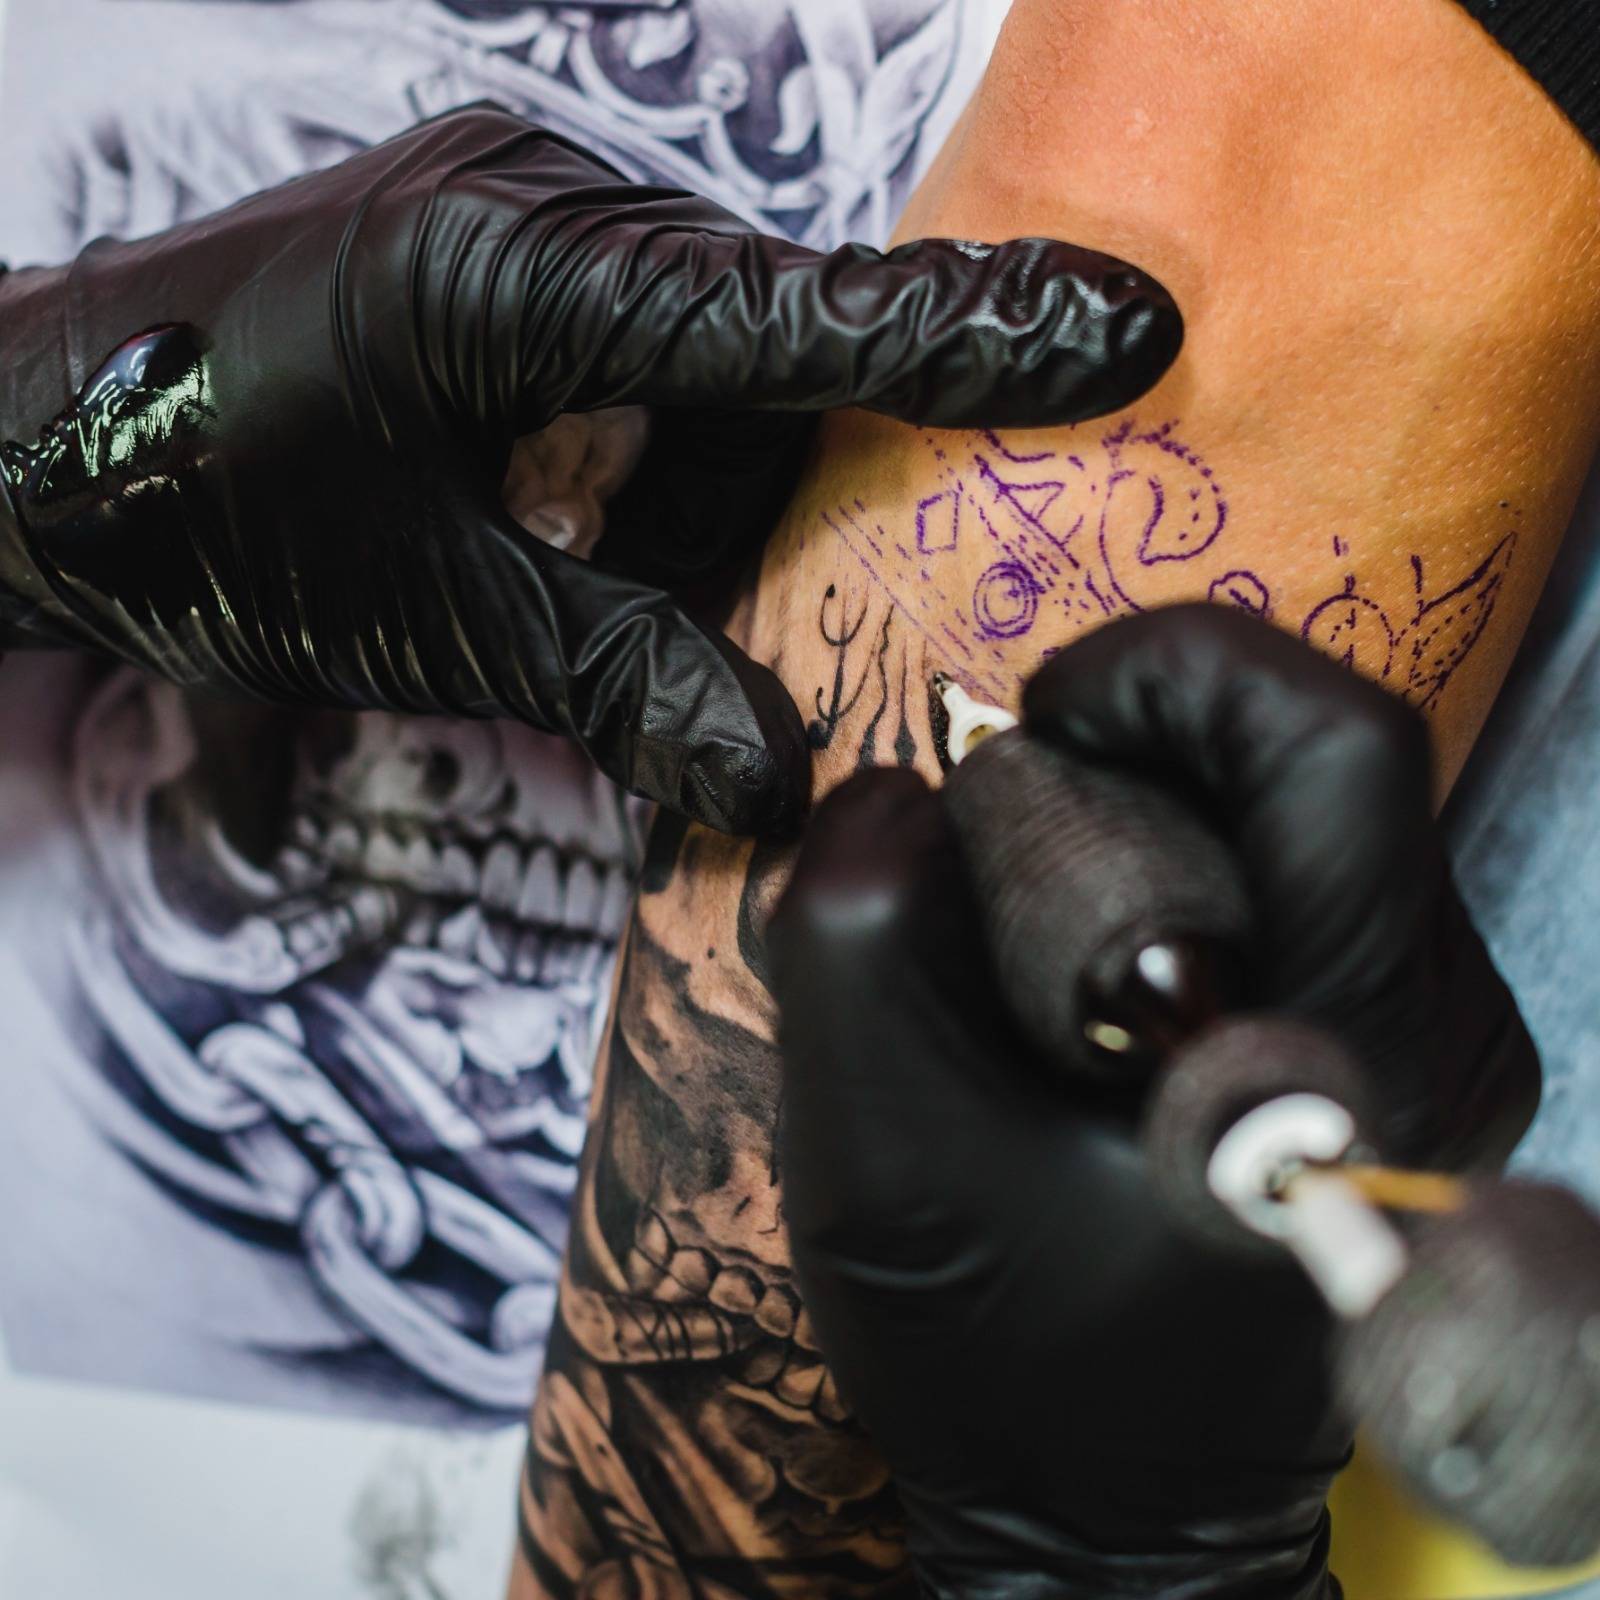 Tatuagens podem ser realizadas com diferentes técnicas